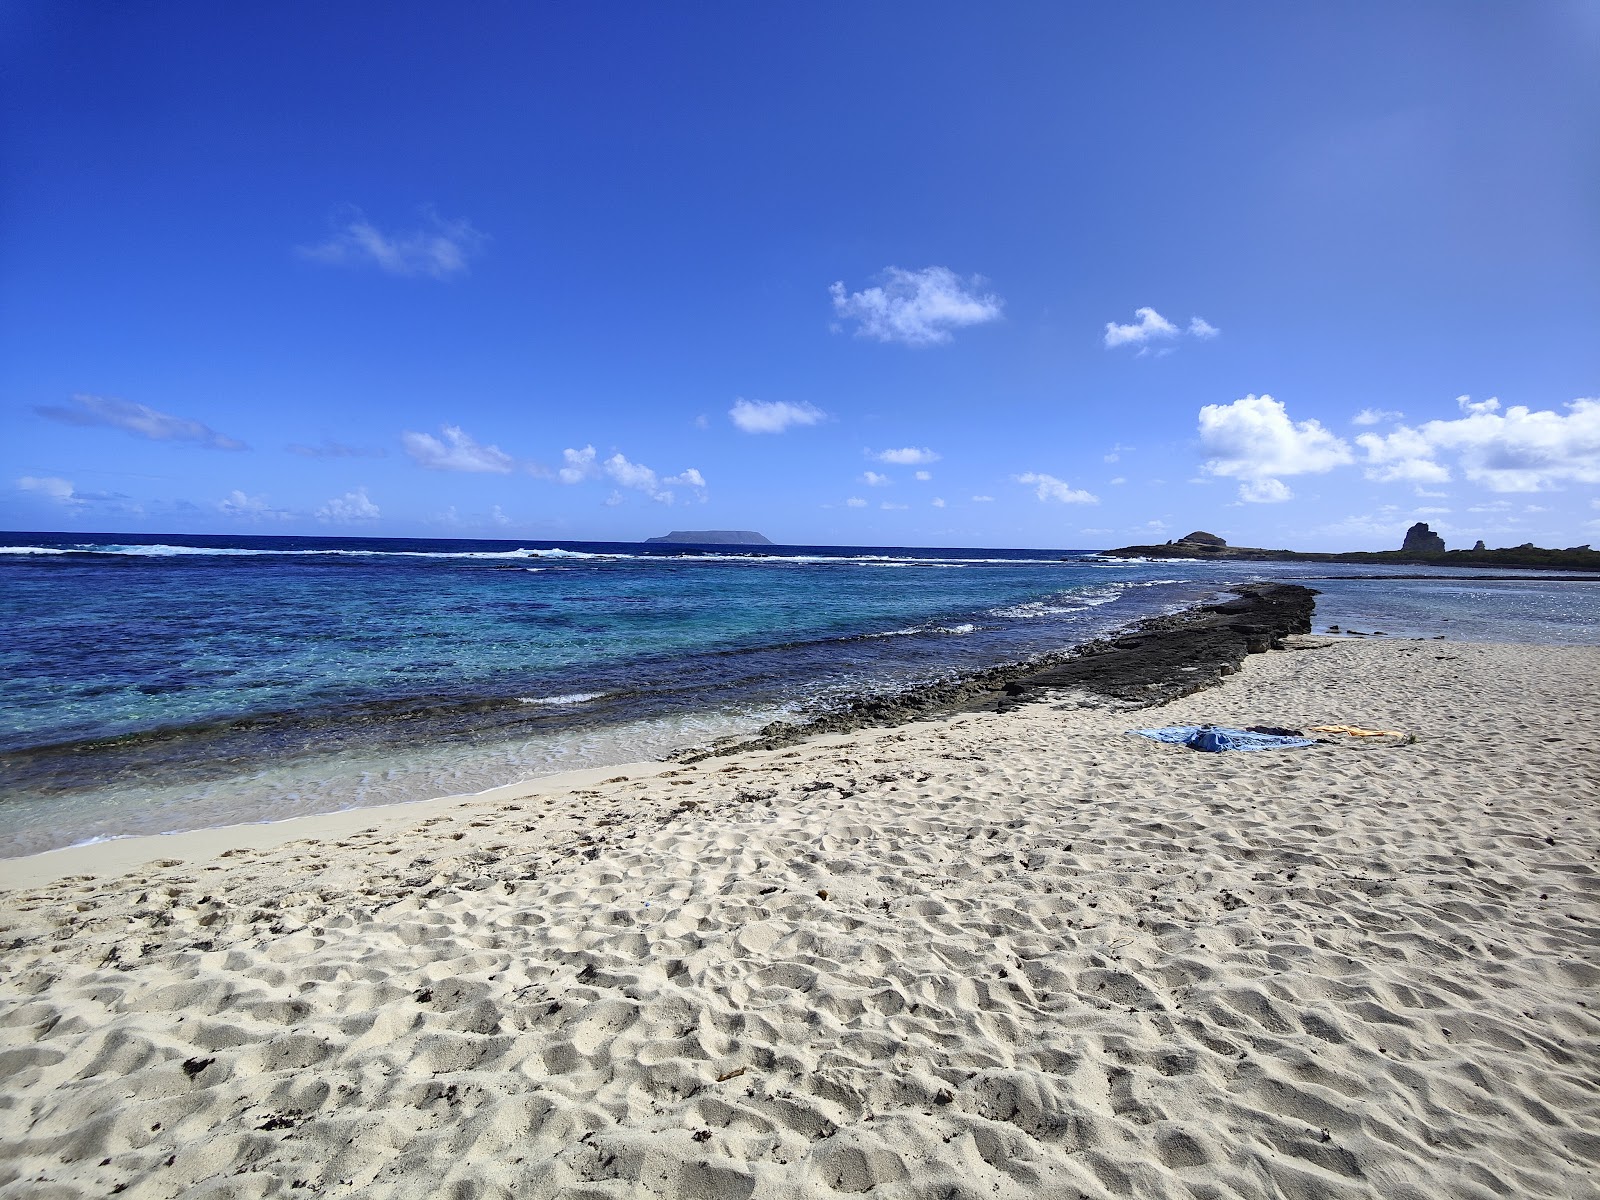 Zdjęcie Beach strap salt - popularne miejsce wśród znawców relaksu